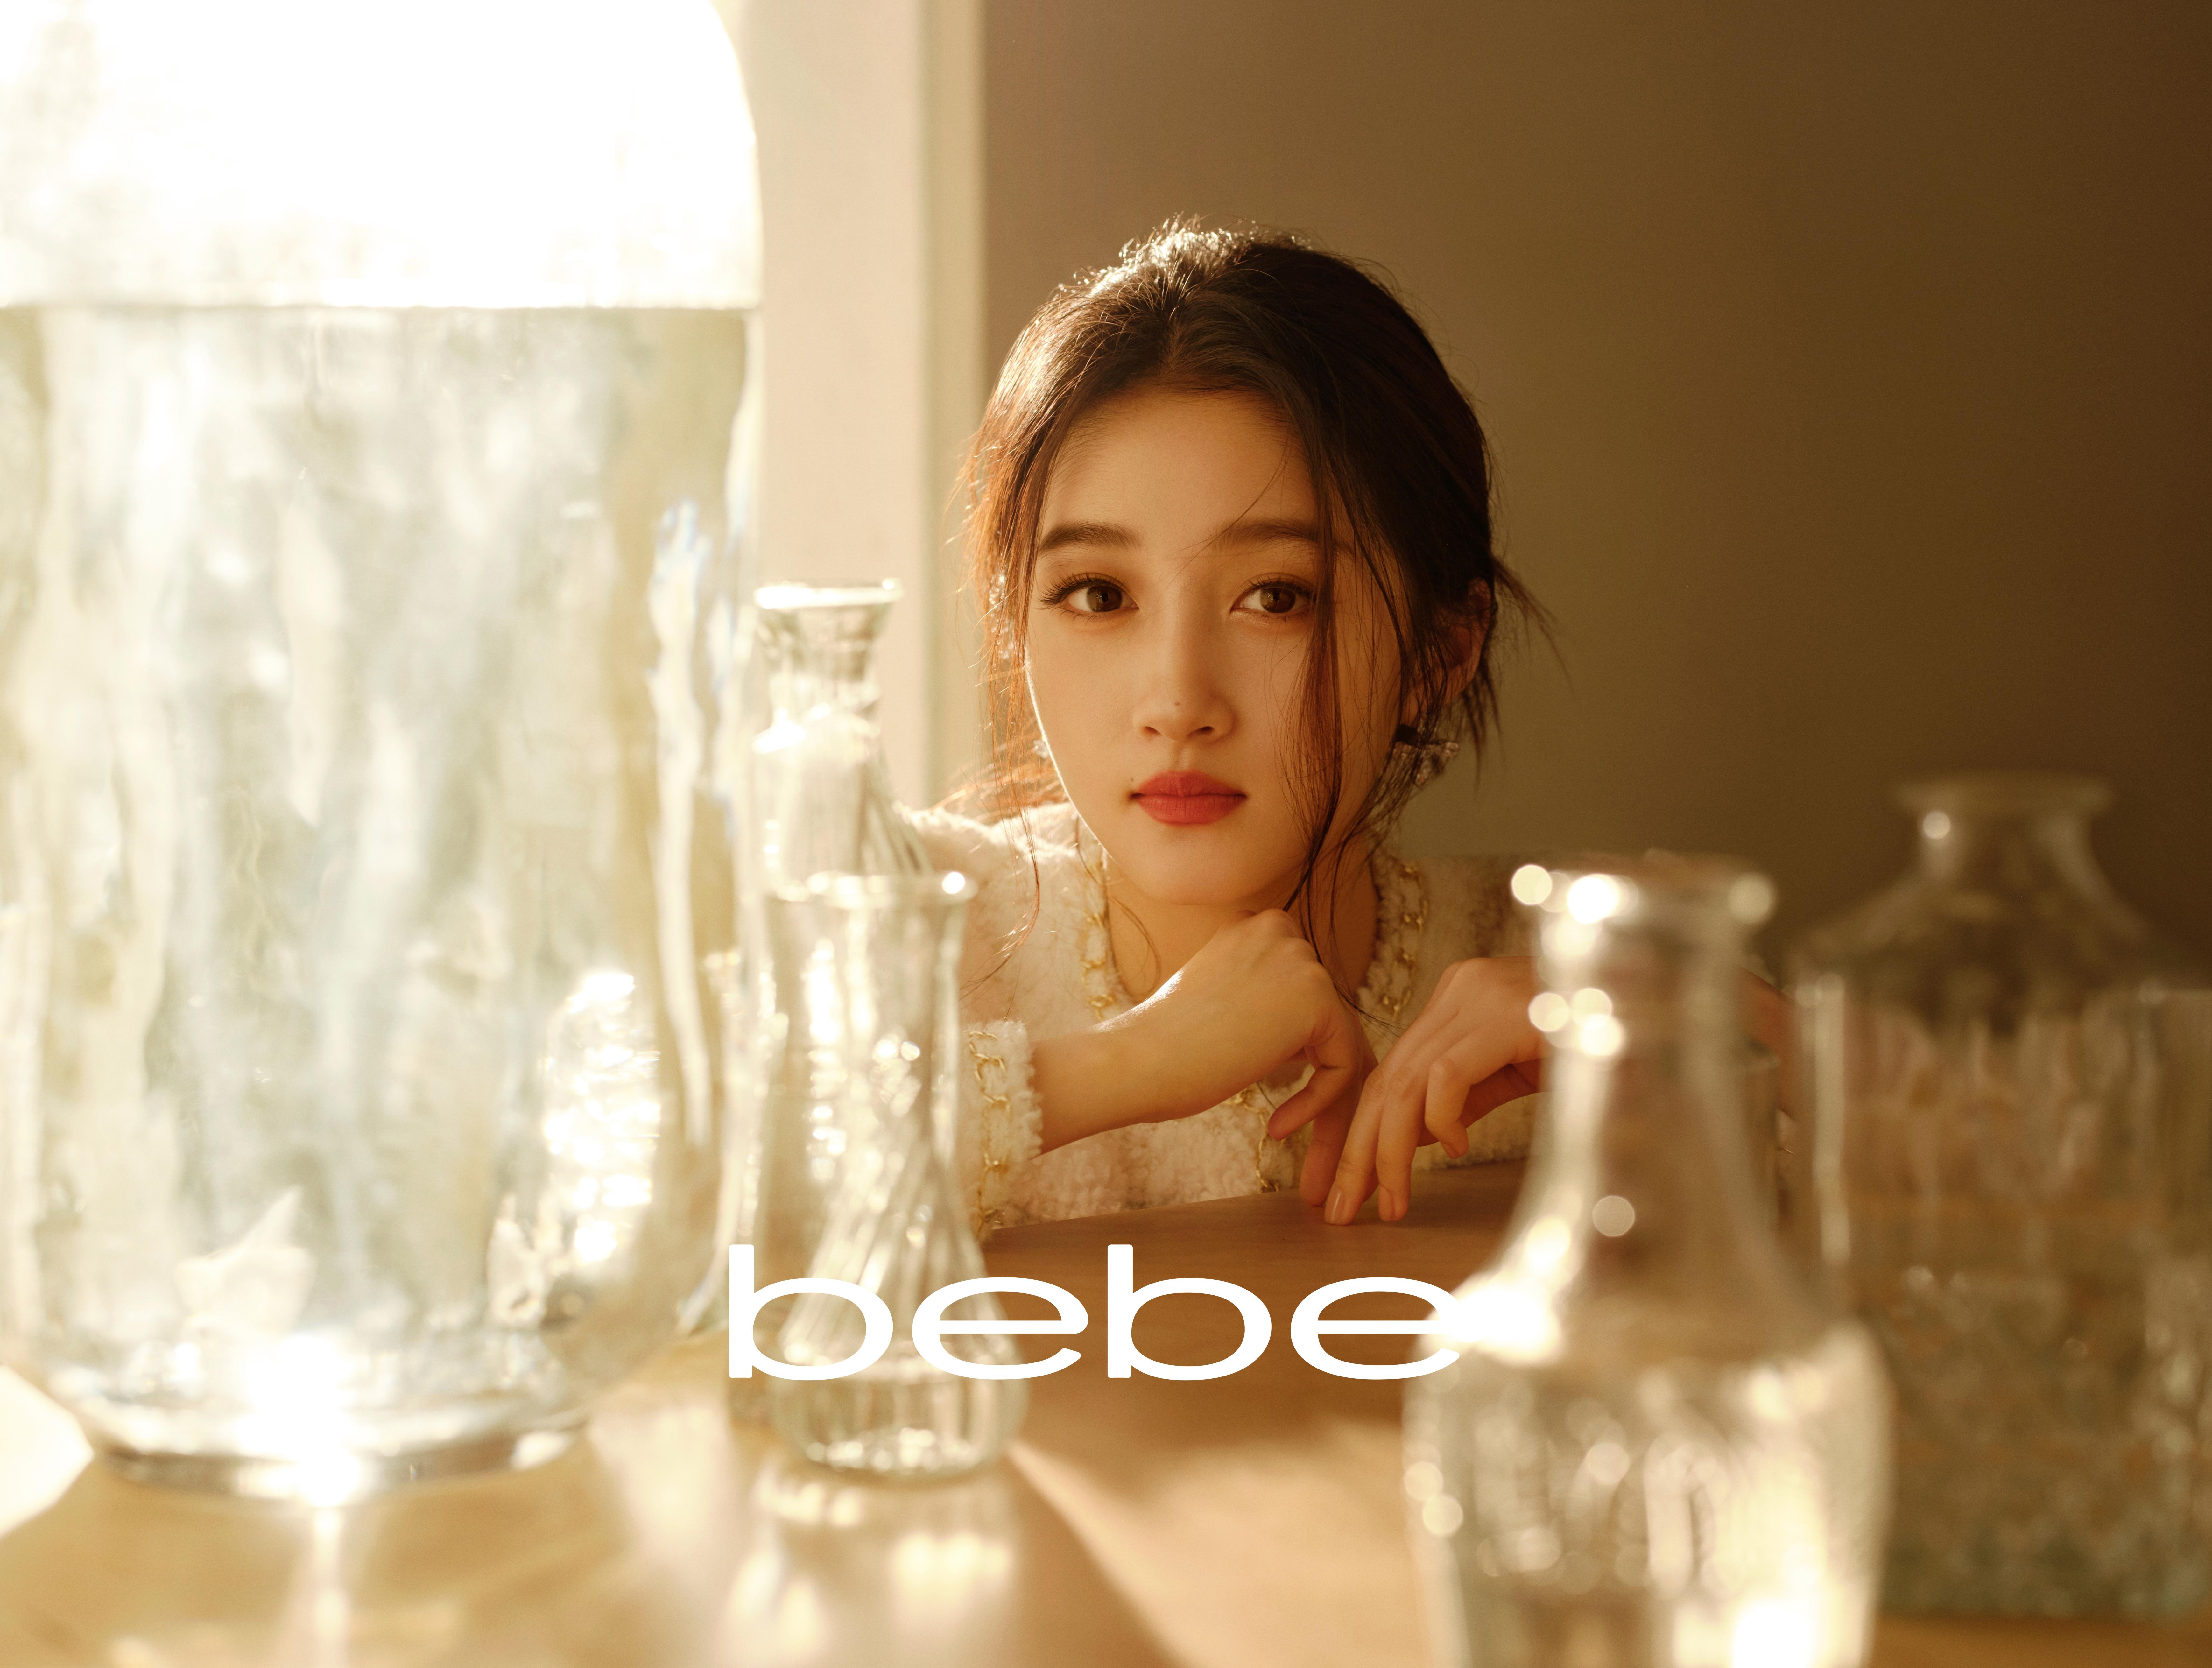 bebe宣布关晓彤成为品牌代言人 共同开启魅力之旅